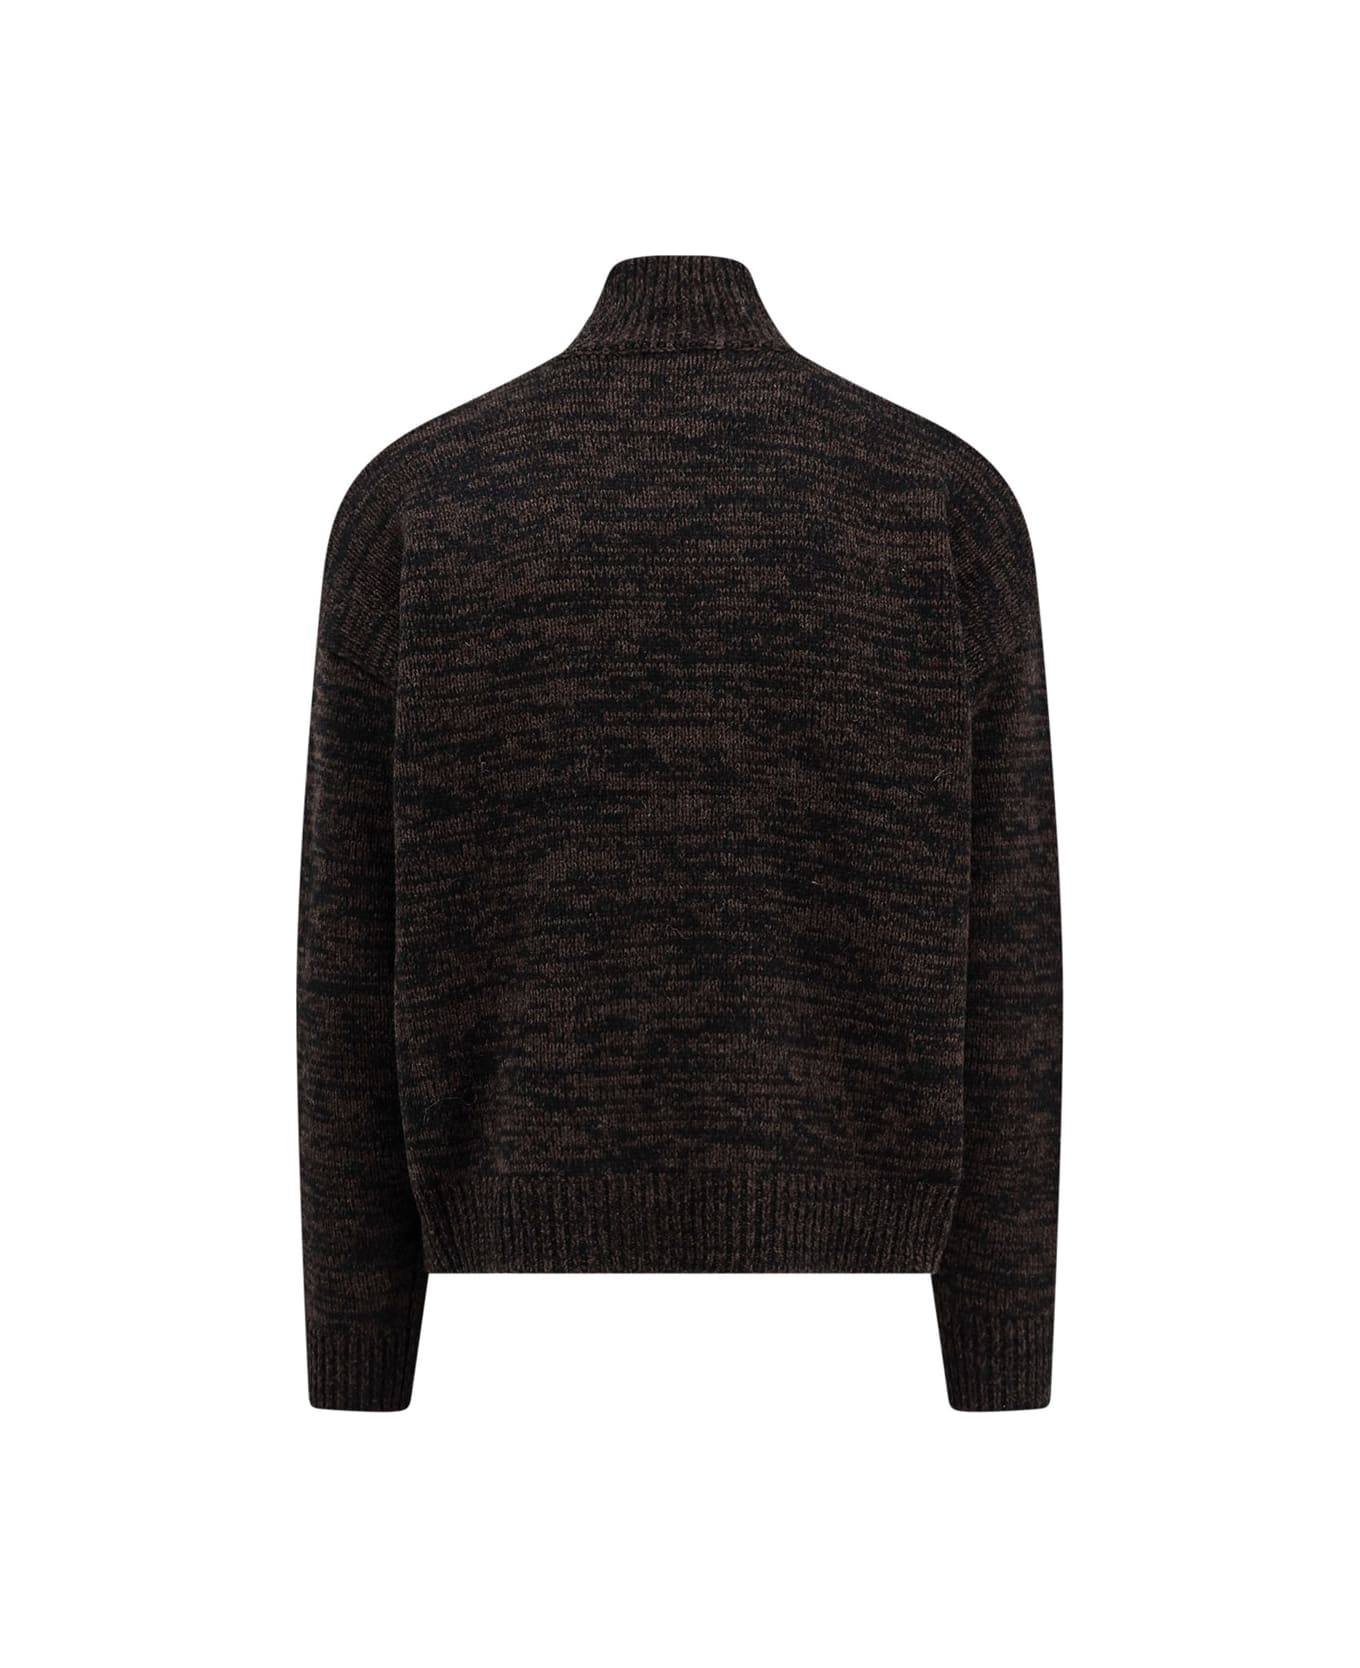 Études Sweater - Black ニットウェア